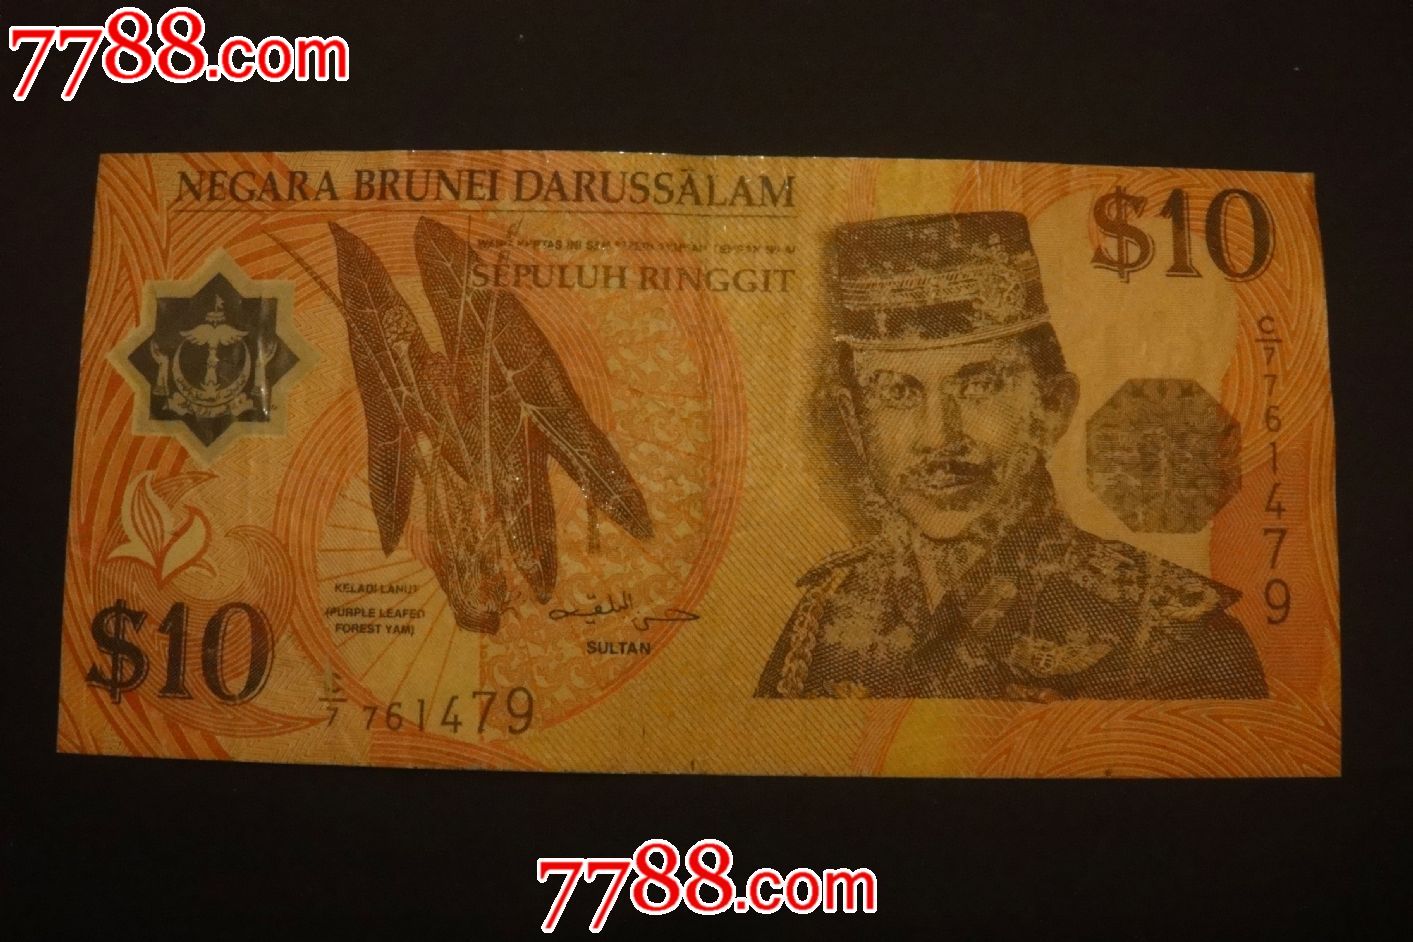 1998年文莱10元塑料钞